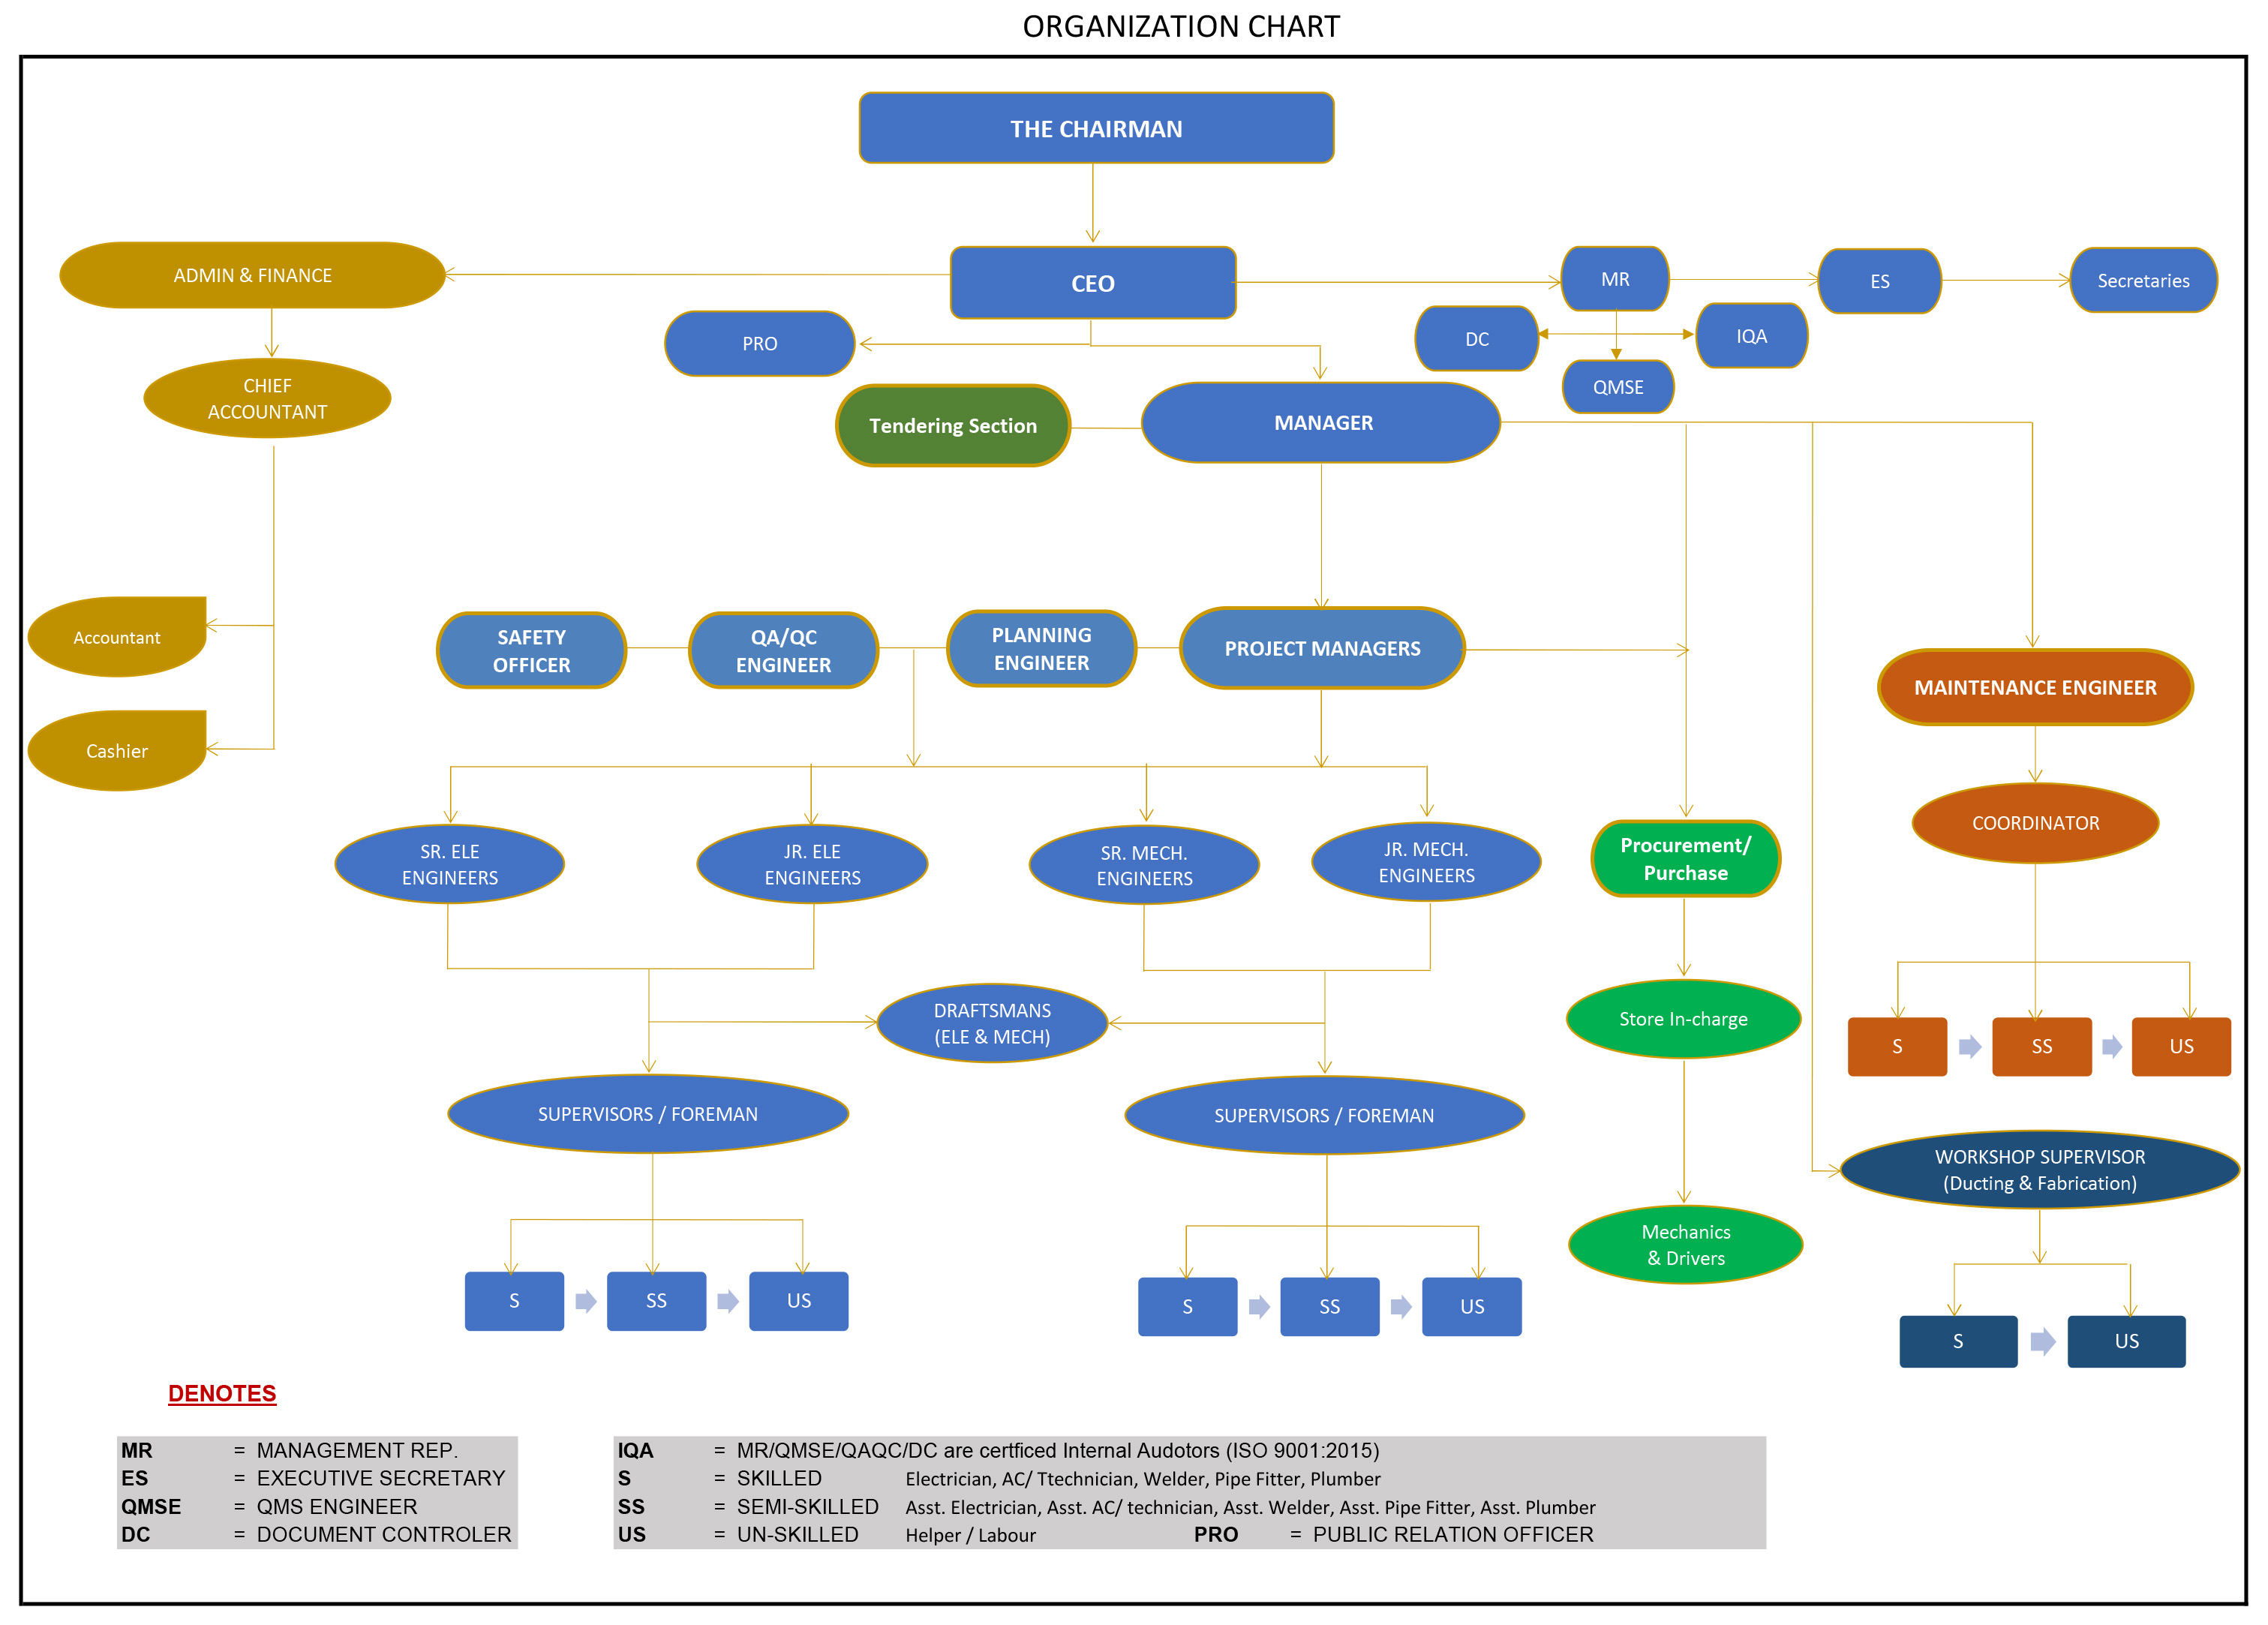 hbk Organization chart